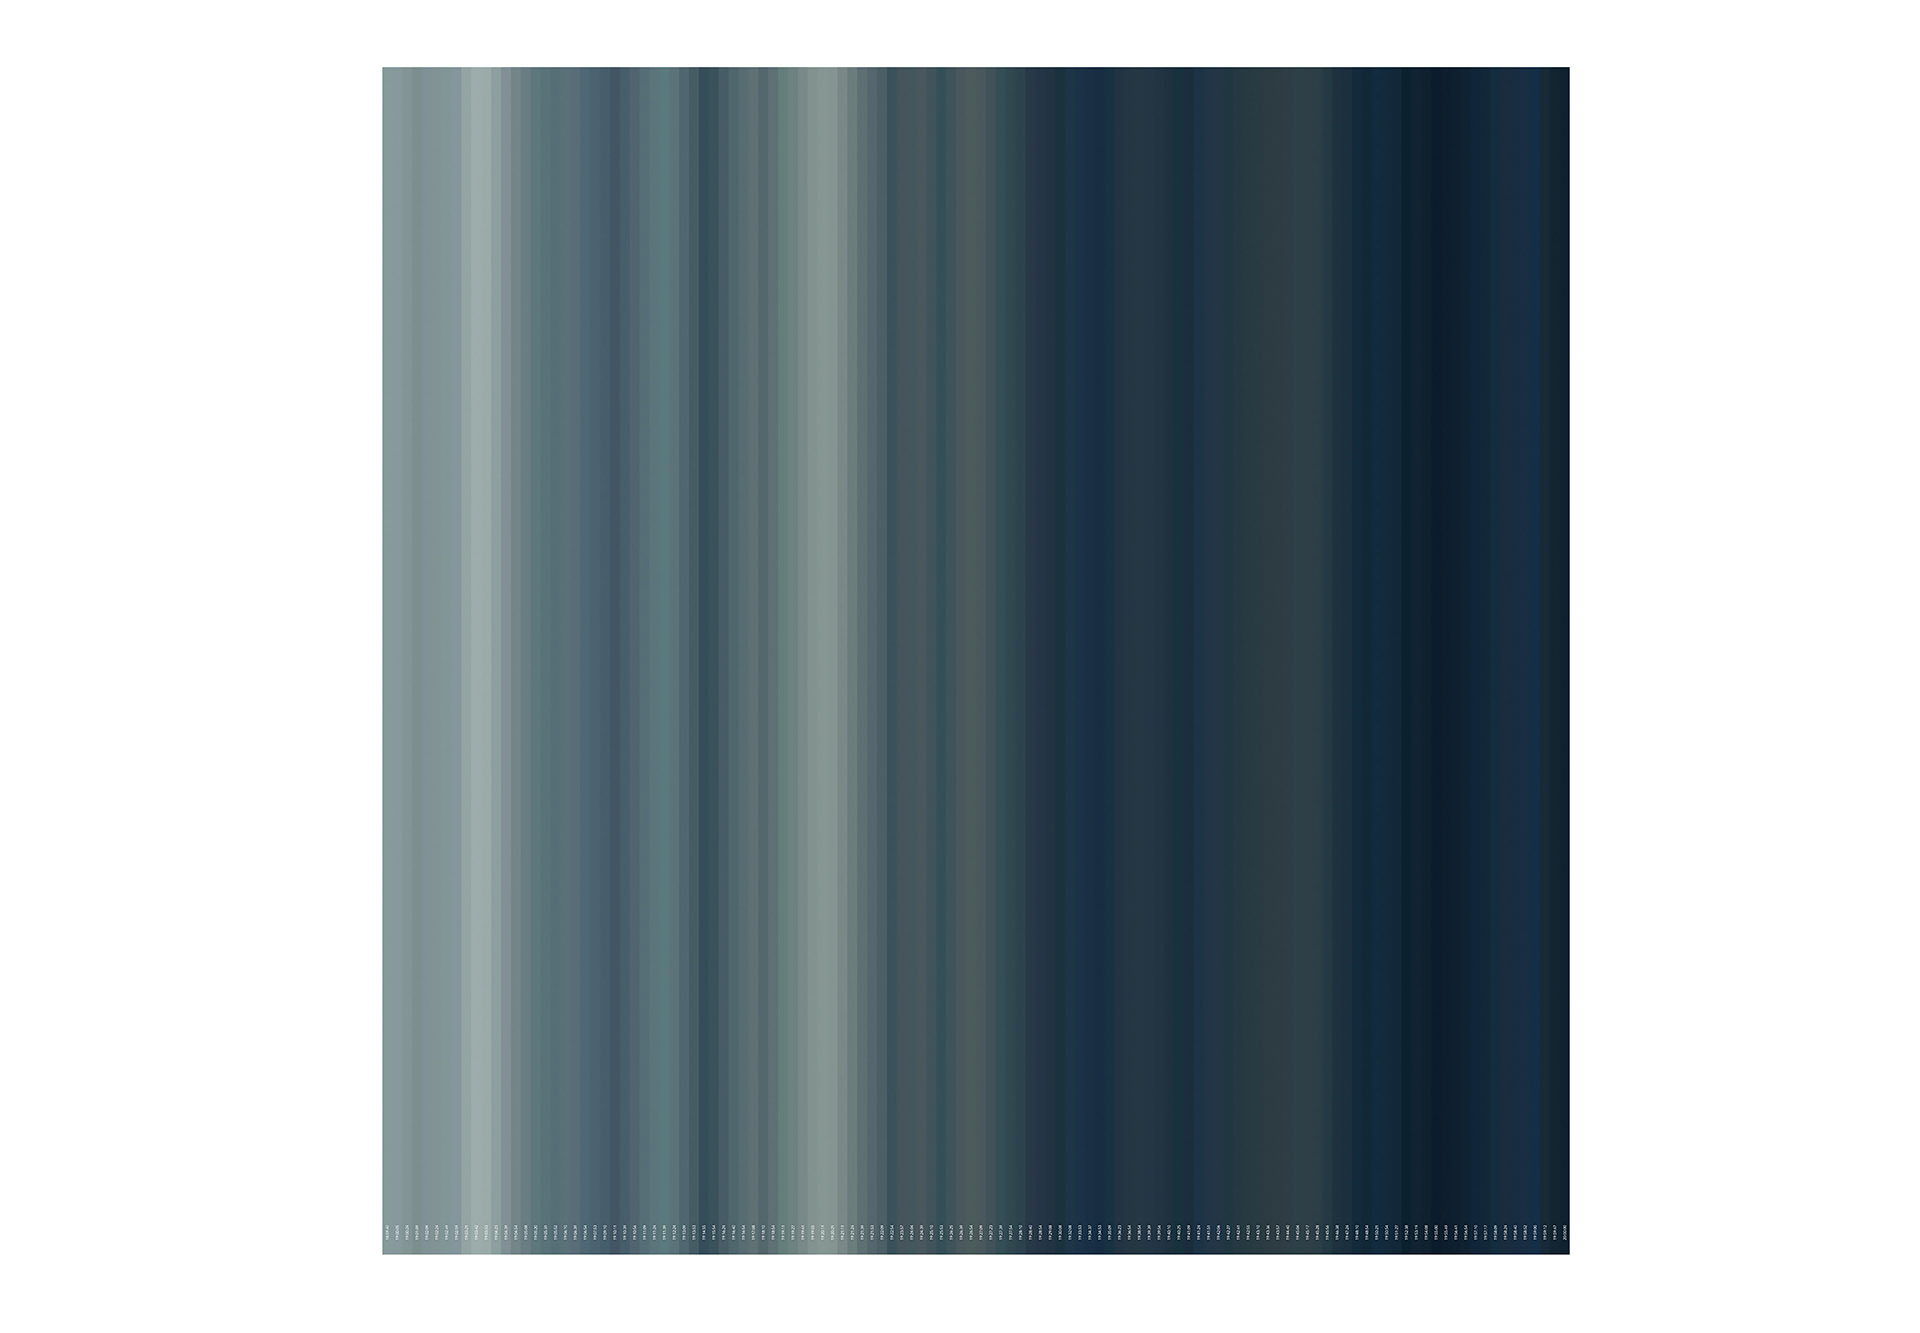 blau, unendlich 2018/24 - 2018, 28.07.2010 - 18:59:40 - 20:00:00, Giclée Druck auf Hahnemühle Photo Gloss 260g, auf Aluminium, Acrylglas, 1/3, 120 x 120 cm